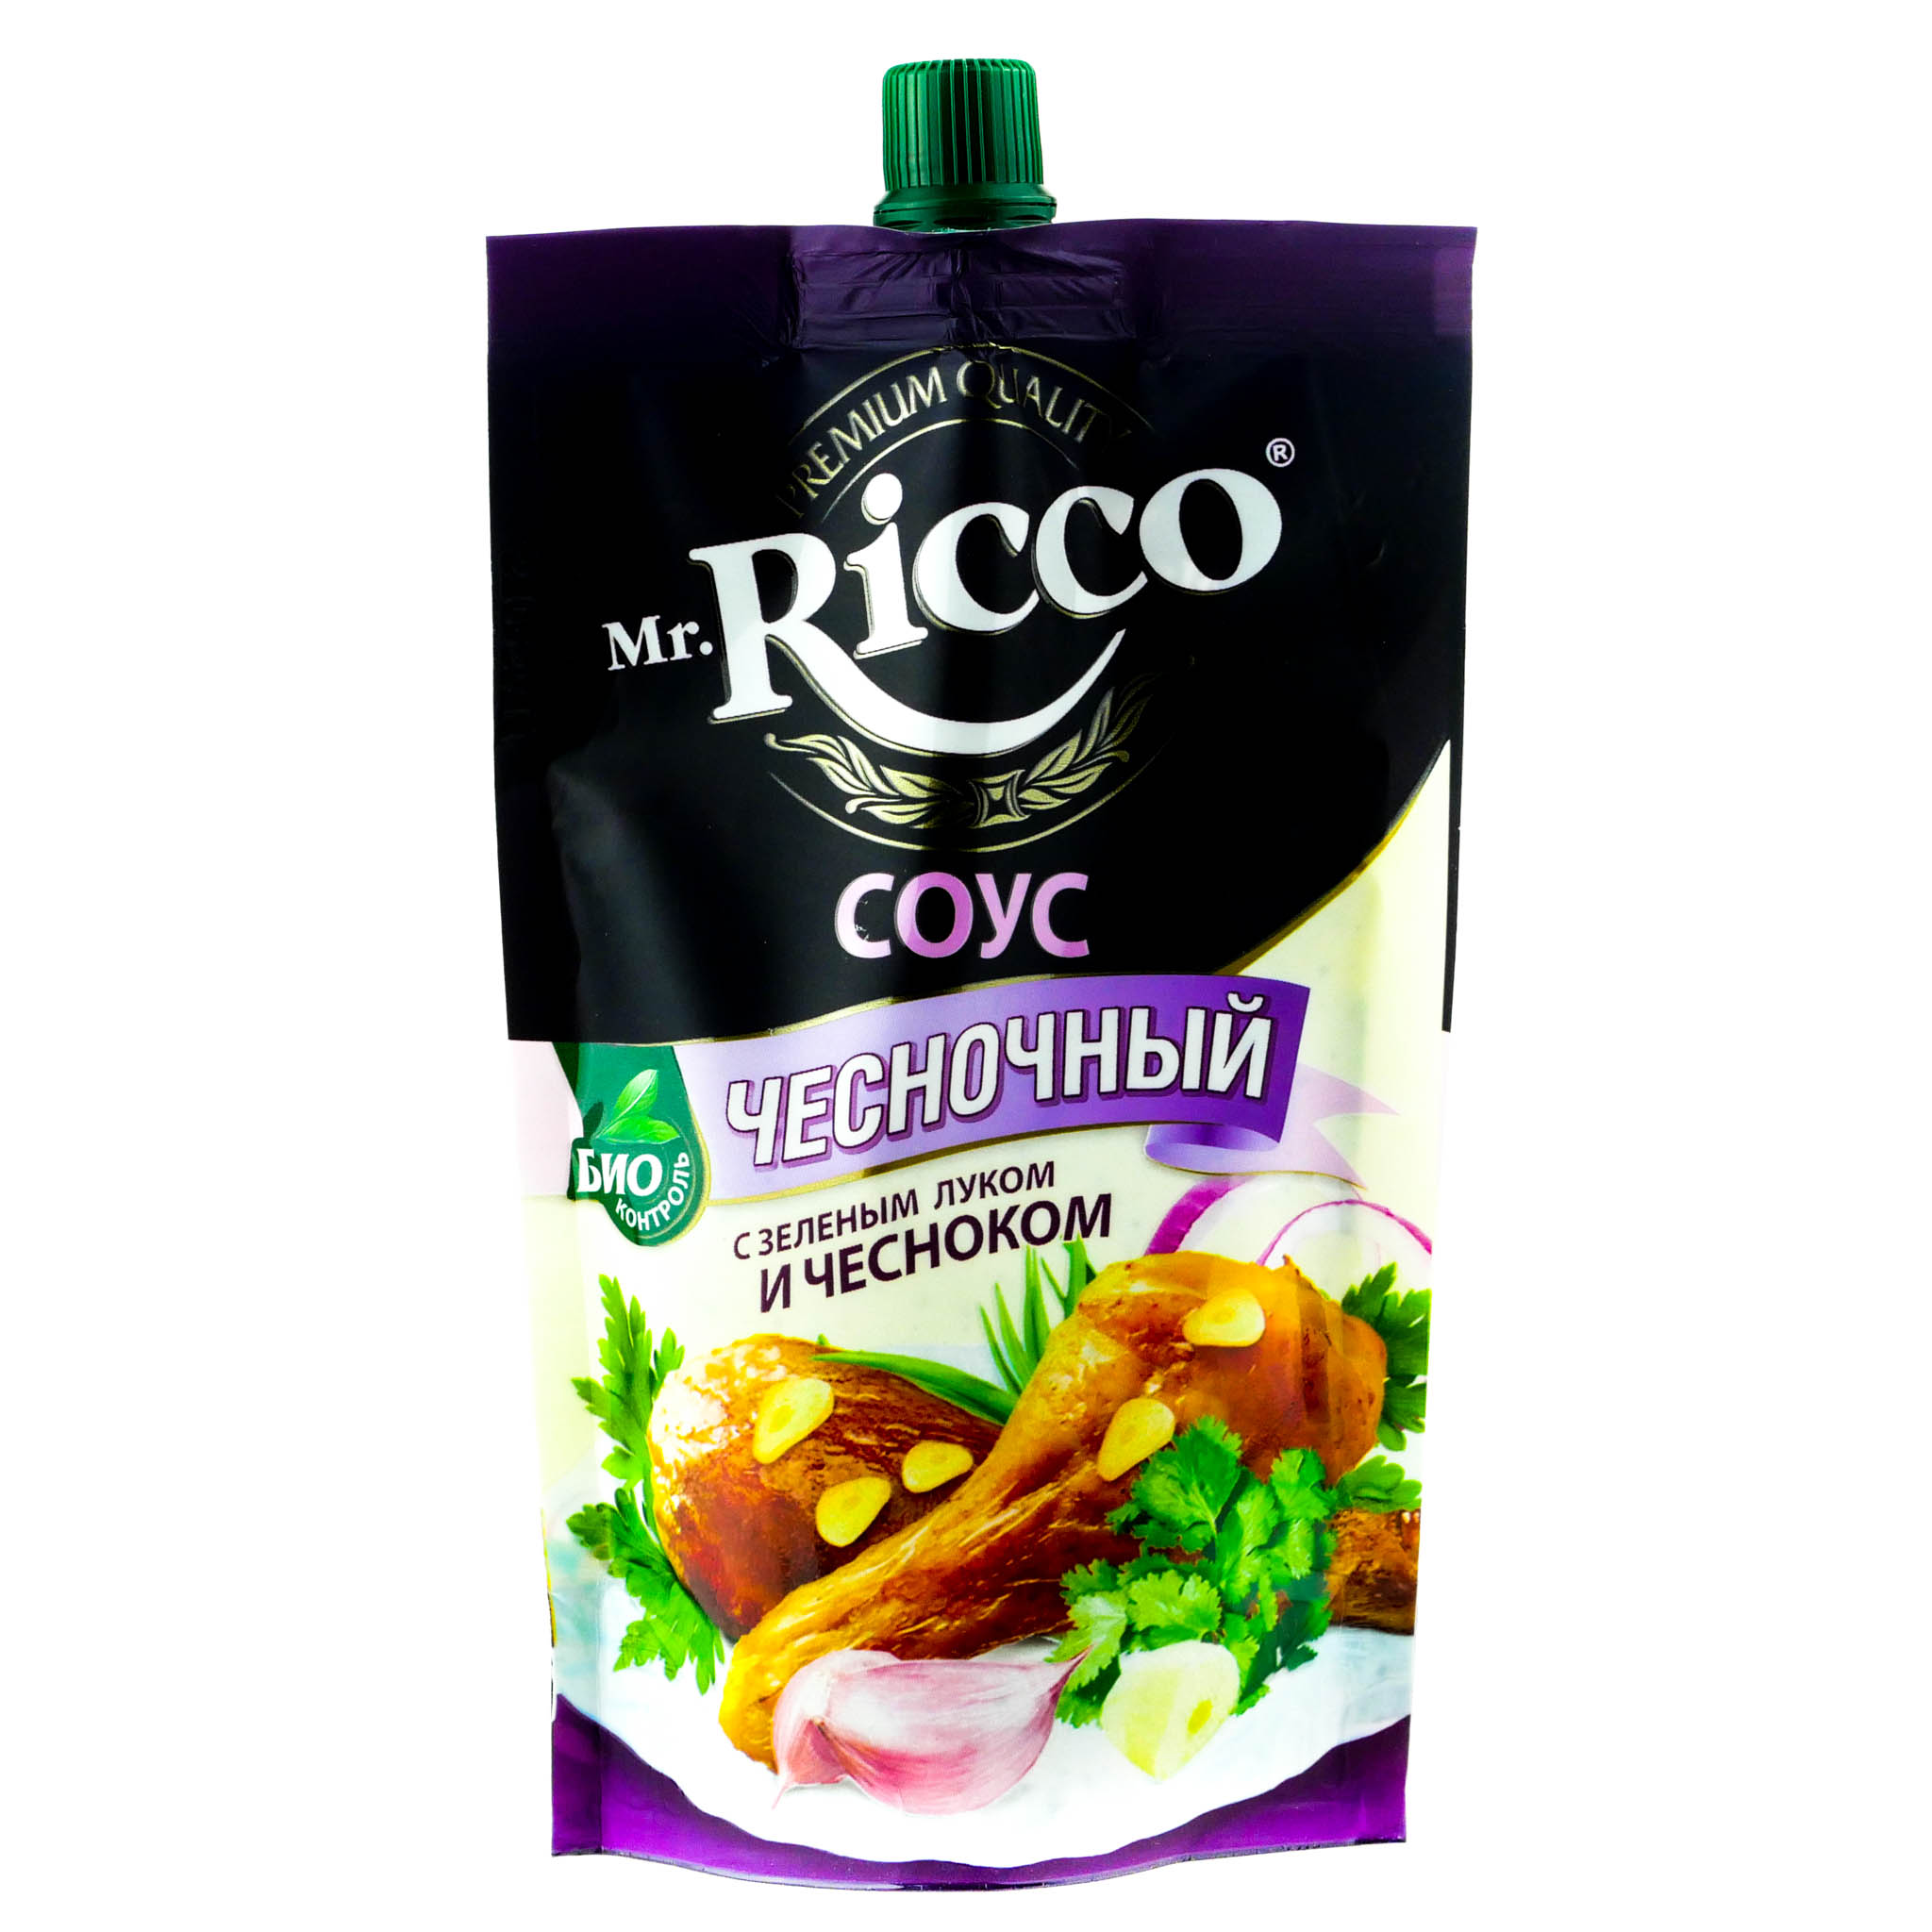 Cоус на основе растительных масел Mr. Ricco "Чесночный" дой пак 210гр.